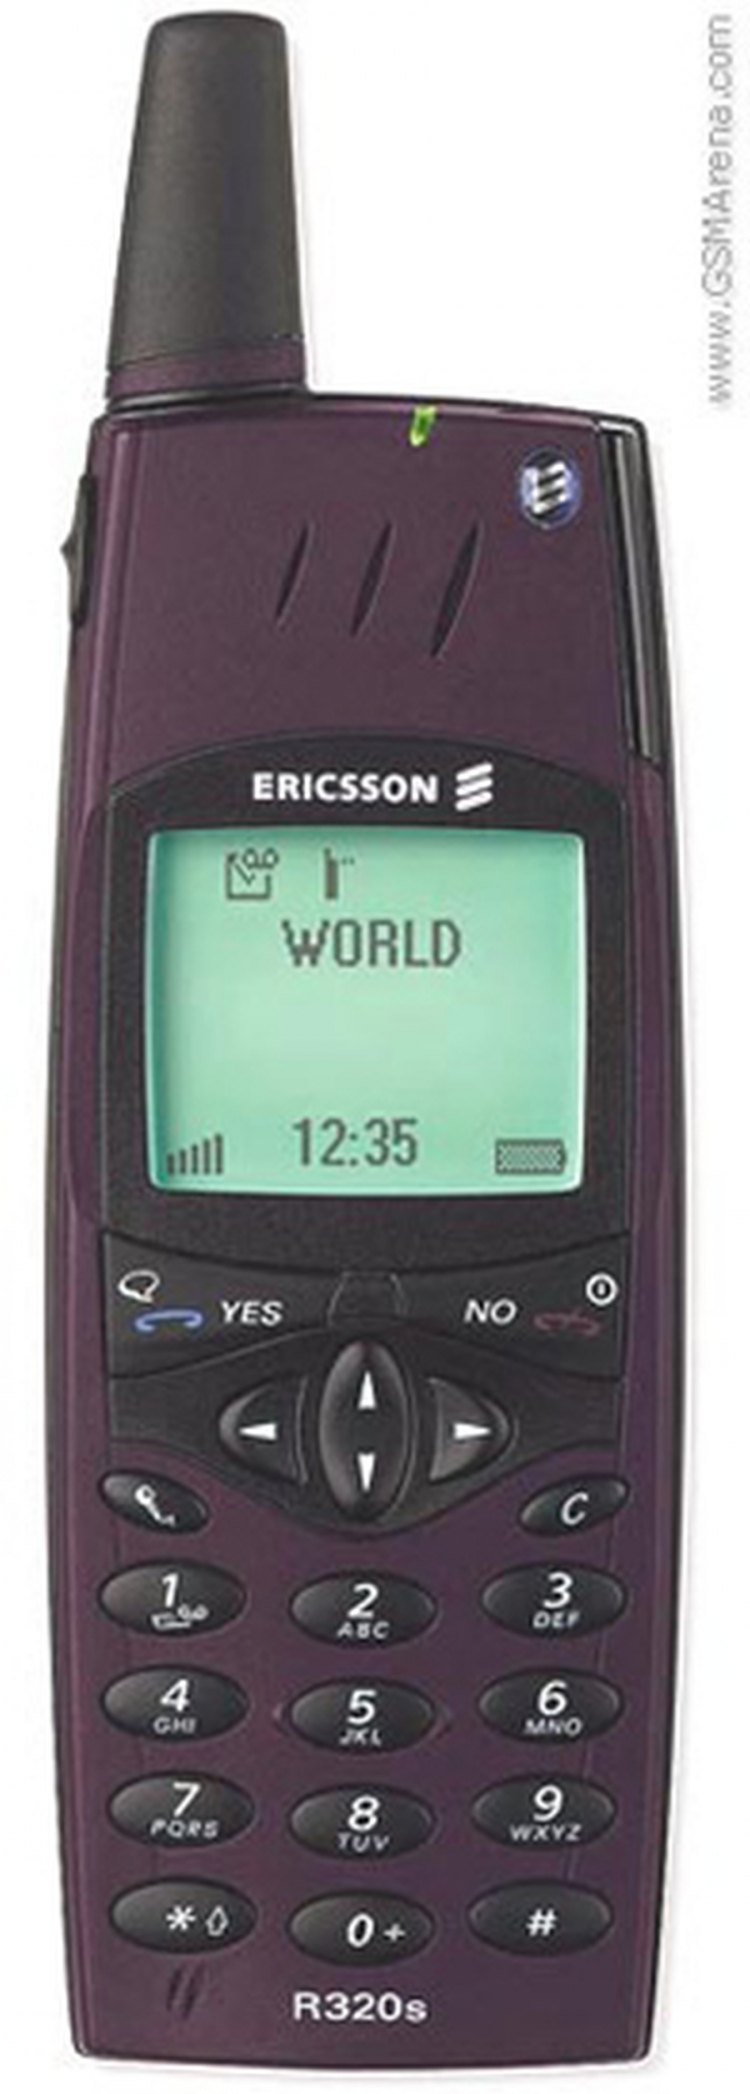 2000. godina - Ericsson R320 - Prvi Ericsson koji je imao podršku za kineske znakove i prvi koji je imao WAP preglednik.